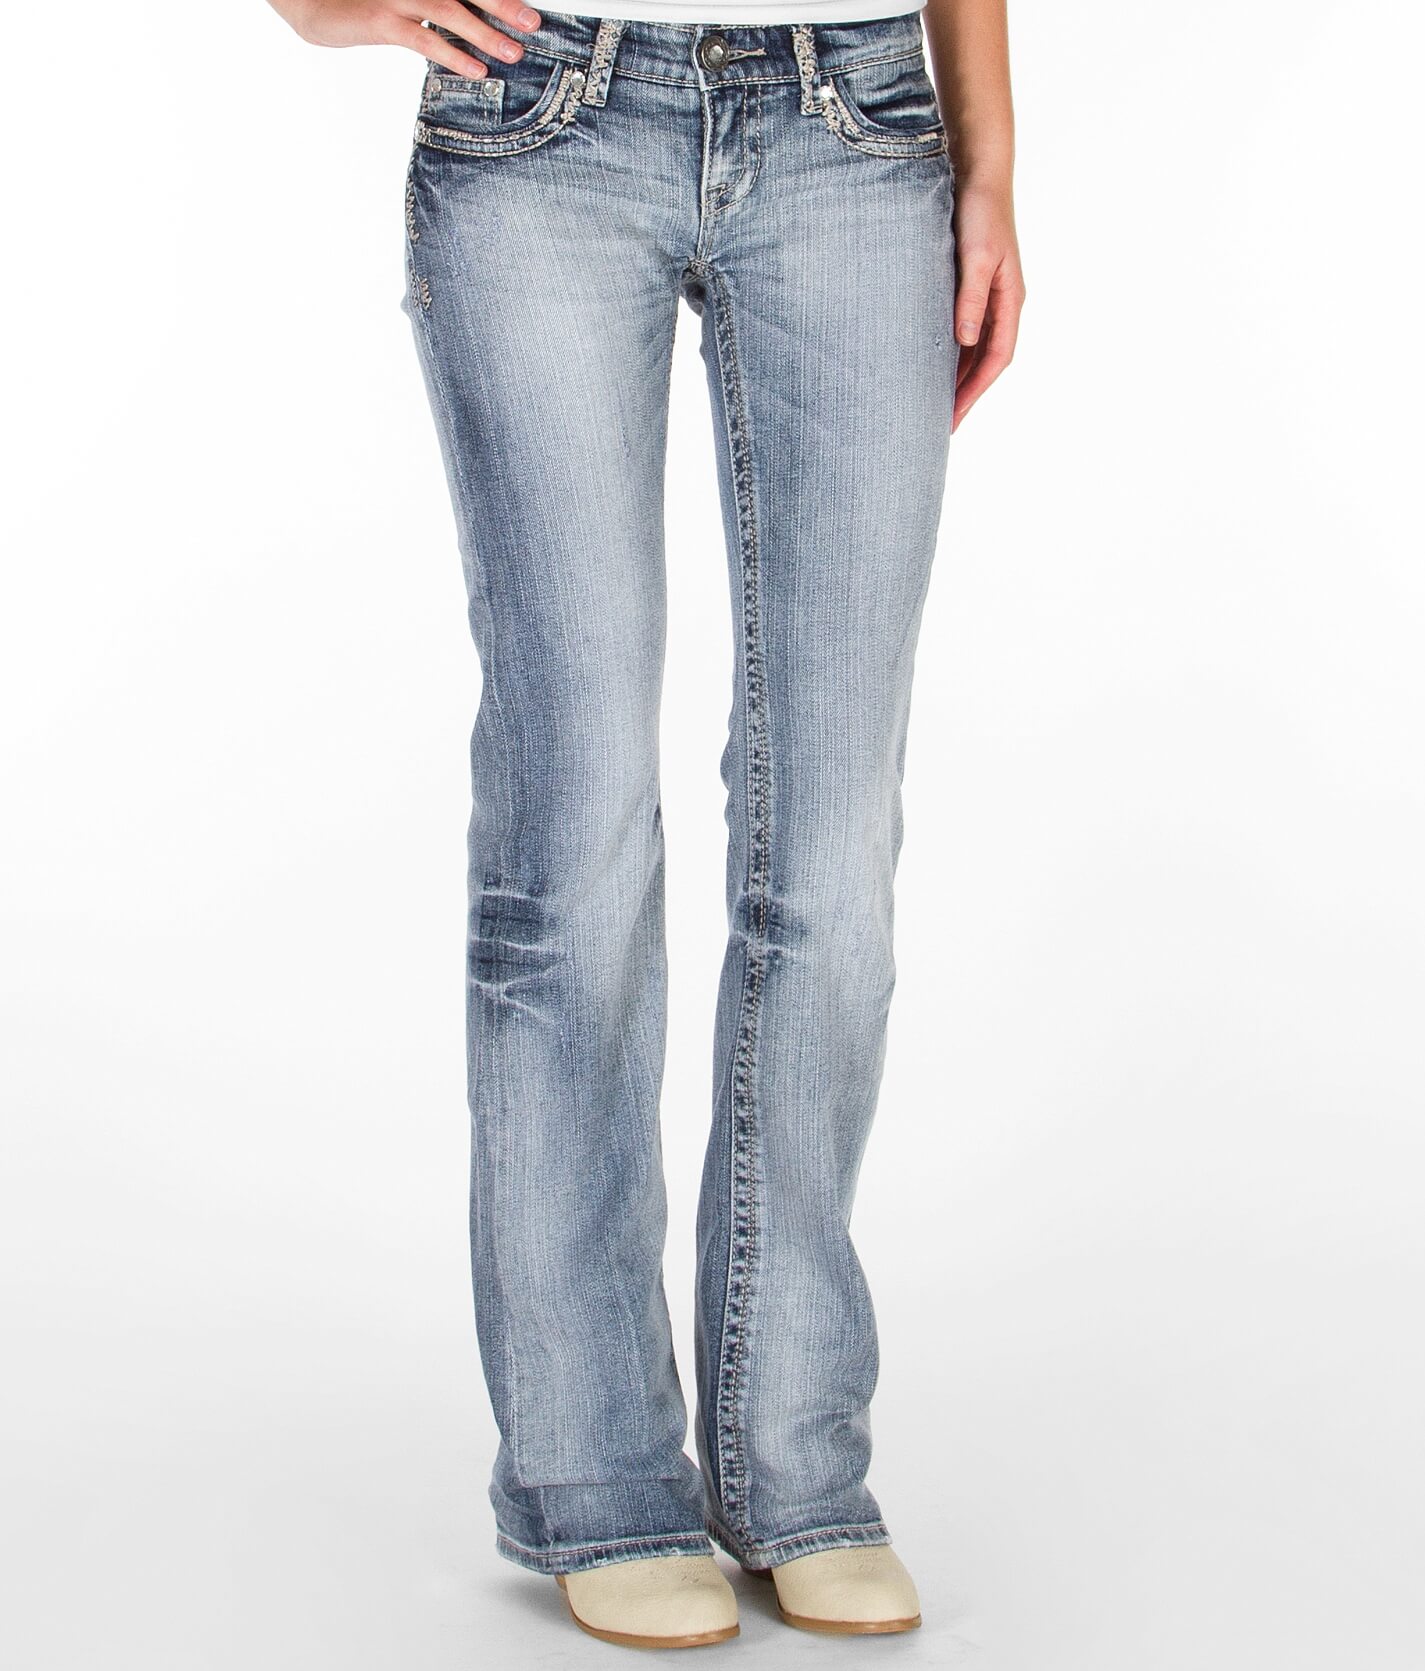 buckle jeans women's bootcut